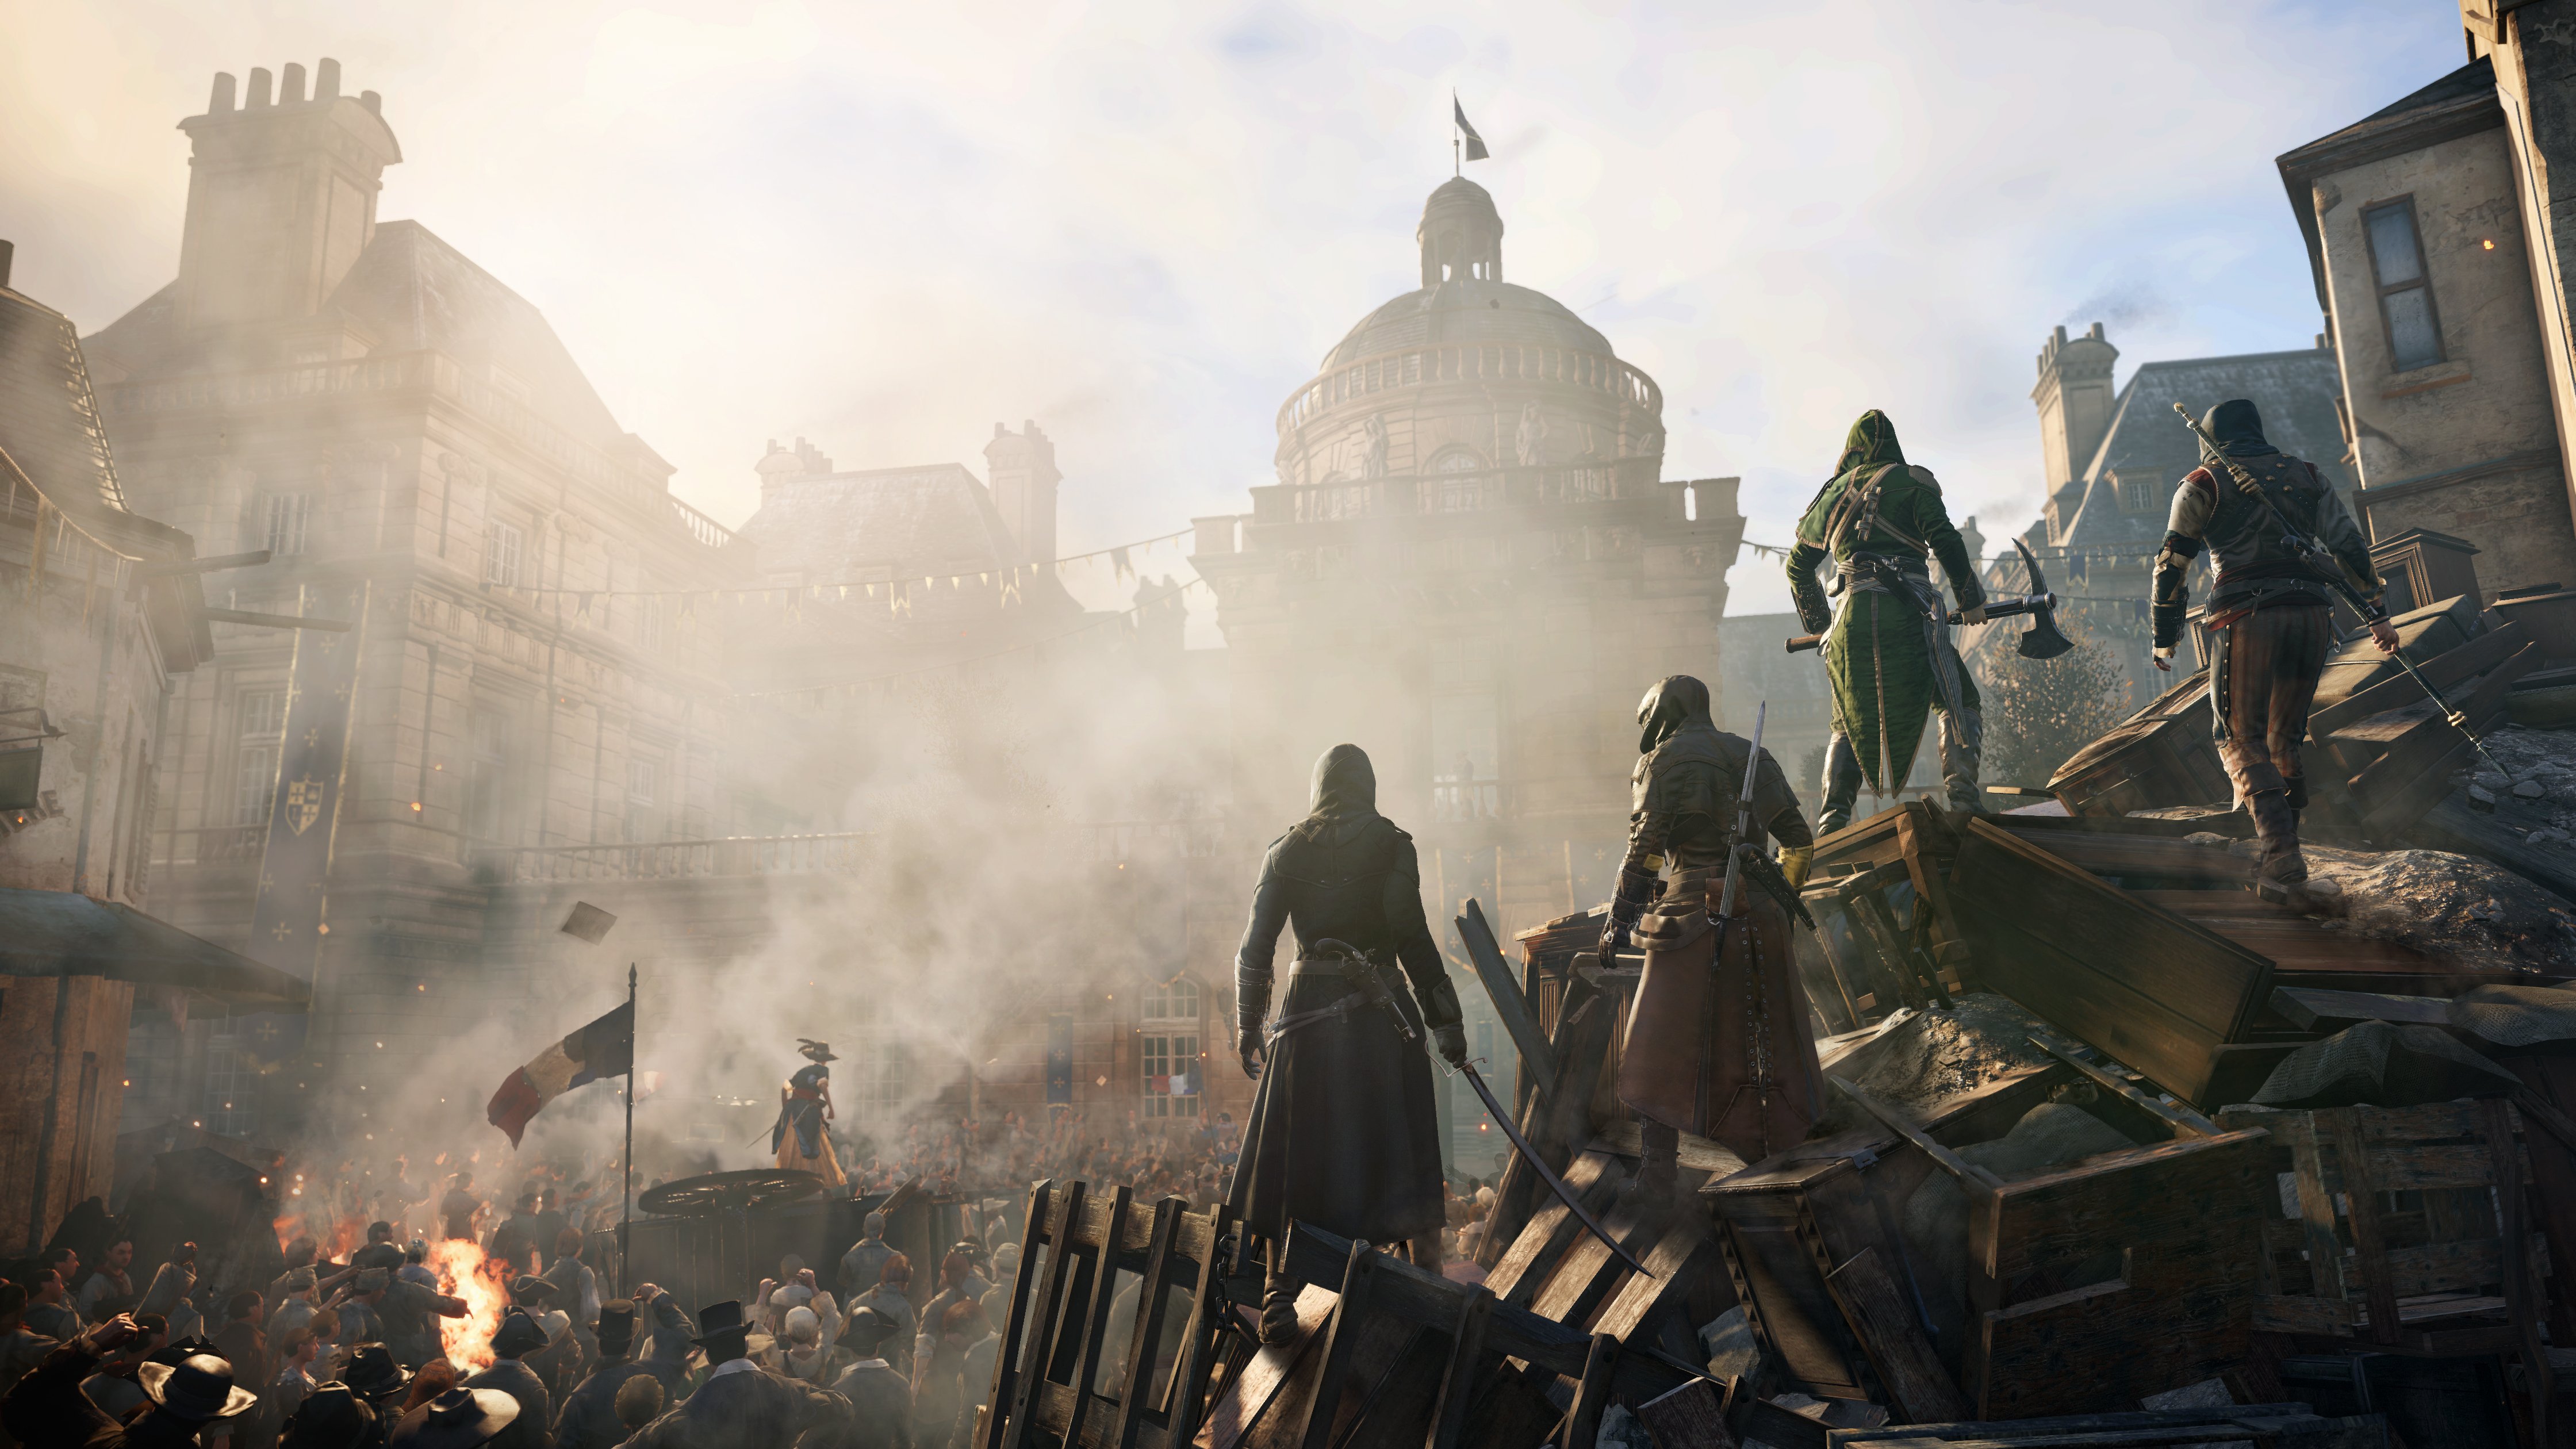 Image du jeu vidéo Assassin's Creed Unity durant la révolution française